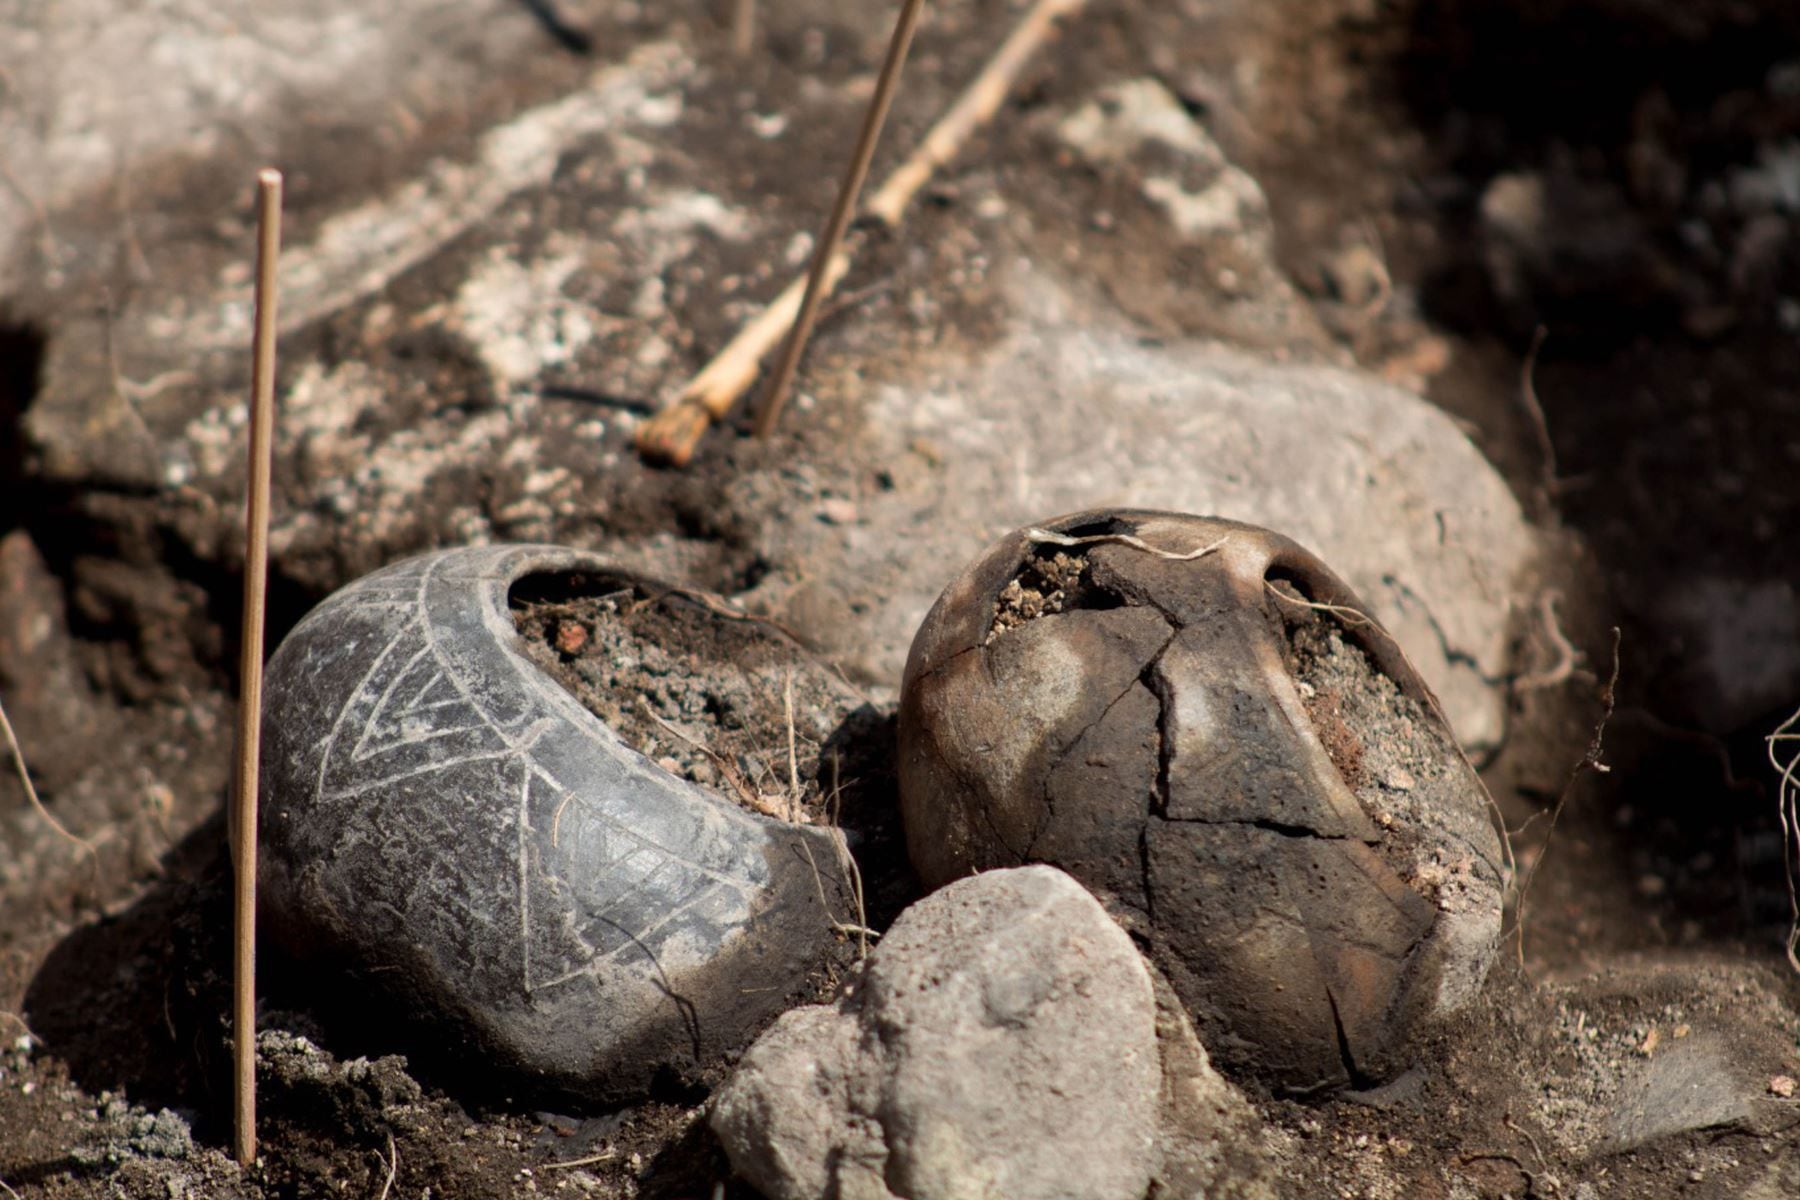 Los cuencos esféricos de cerámica que fueron encontrados junto a los restos óseos del sacerdote - Cajamarca - Perú - 24 de agosto - Crédito: Agencia Andina.